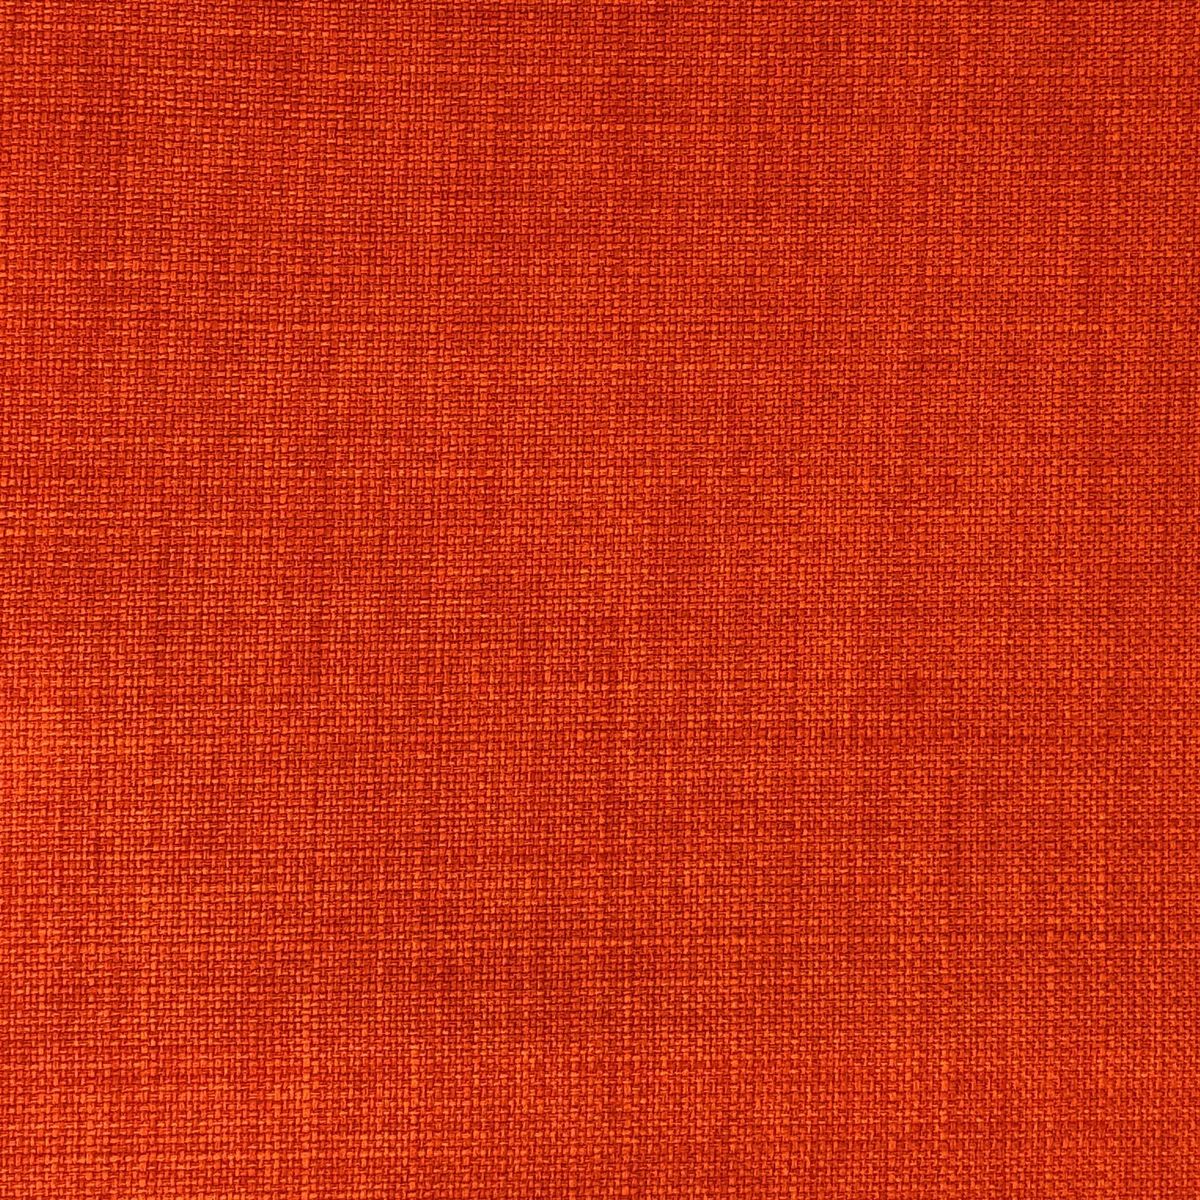 Linoso Rustic Fabric by Chatham Glyn